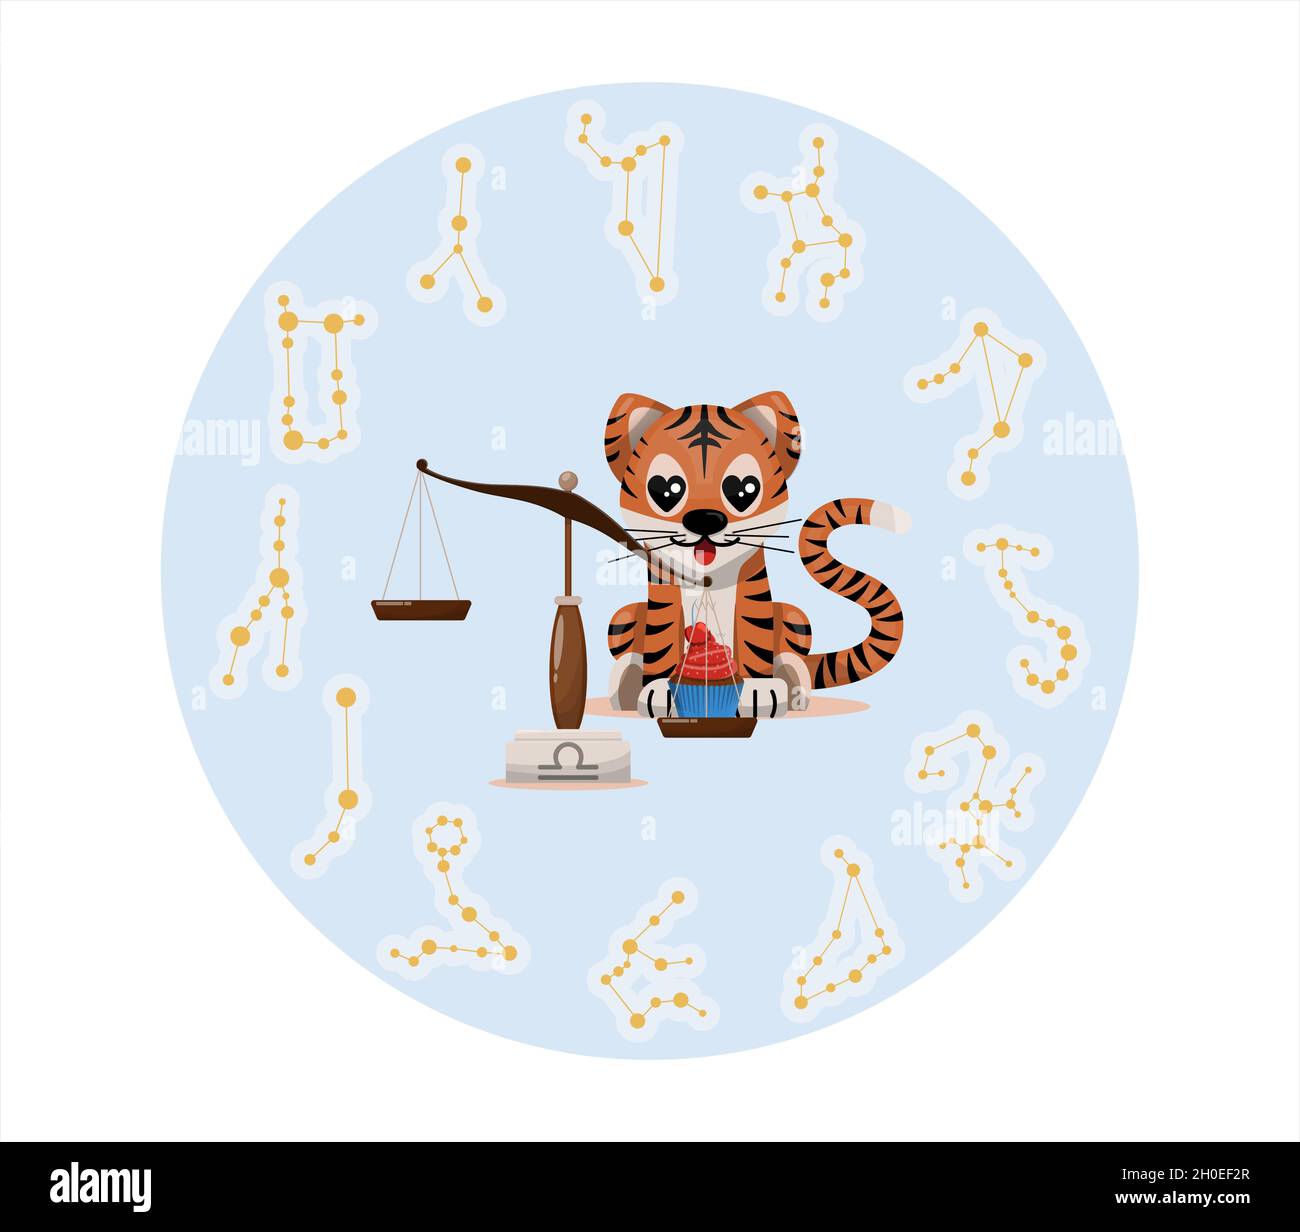 Tiger Junge mit waage Tierkreis Zeichen Astrologische Zeichen Symbol Vektor  Cartoon Illustration Horoskop und Eastern New Year Stock-Vektorgrafik -  Alamy